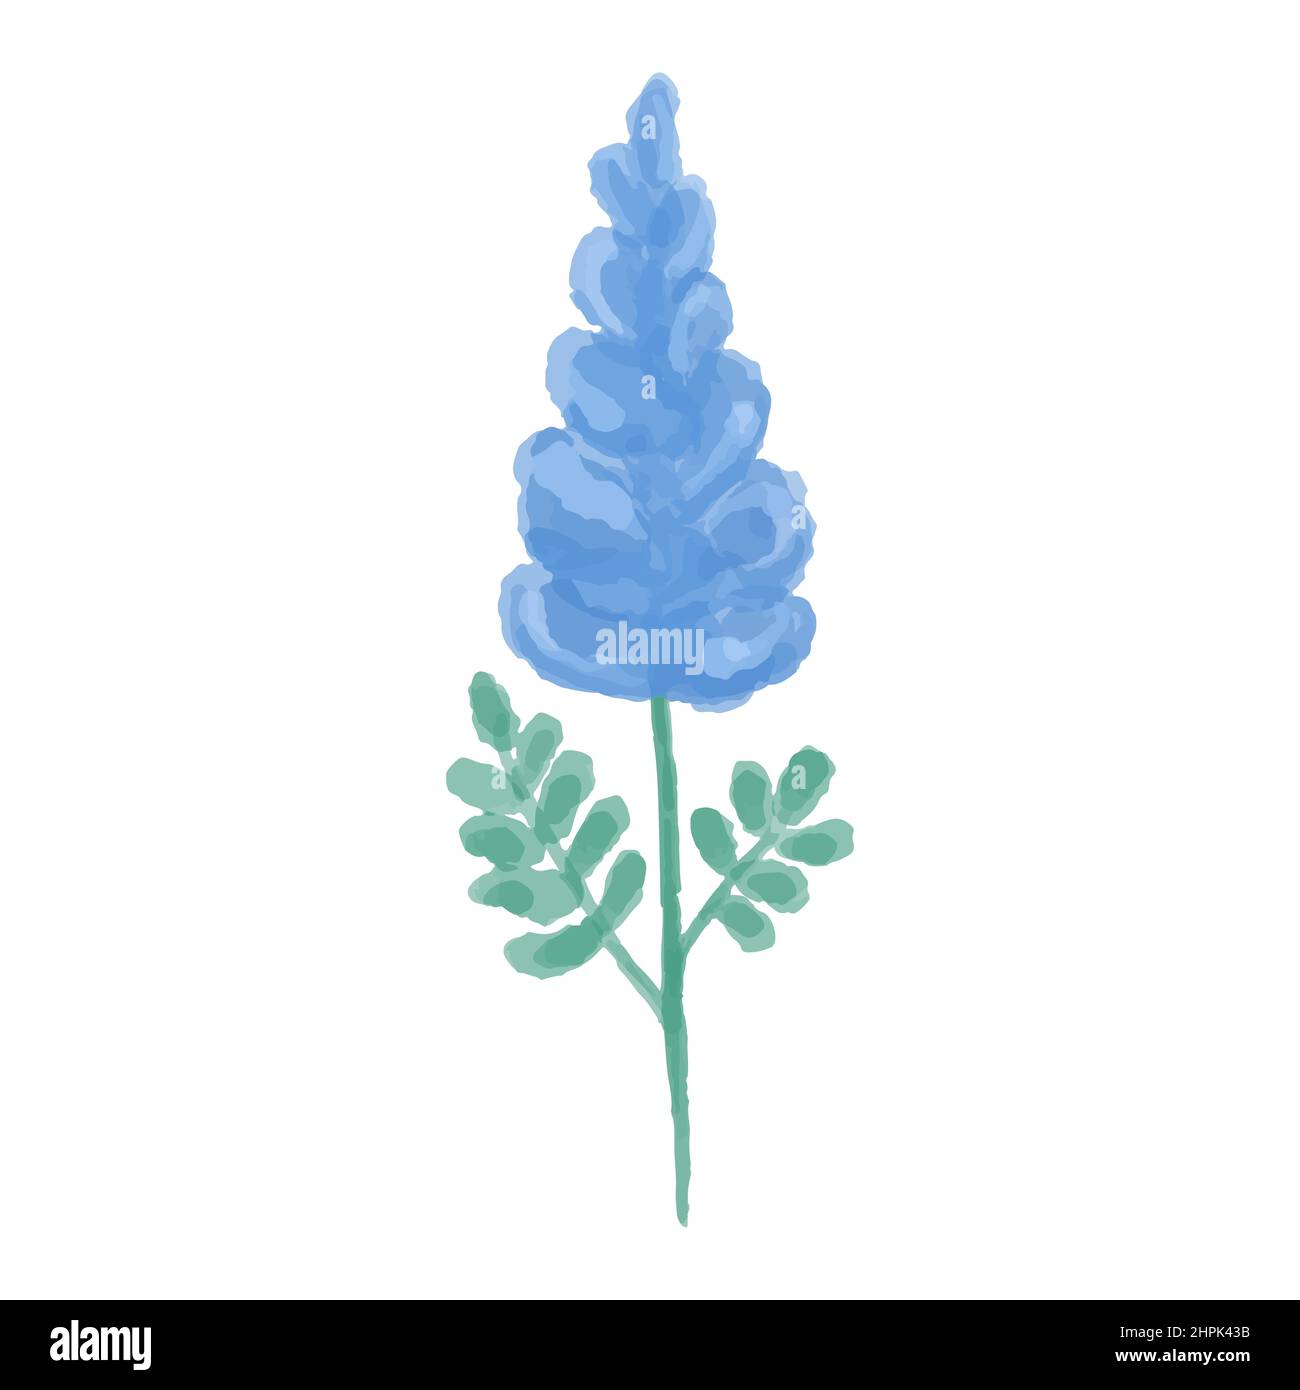 Illustration dessinée à la main d'une fleur sauvage bleue. Gladiolus peint à l'aquarelle. Illustration vectorielle. Illustration de Vecteur